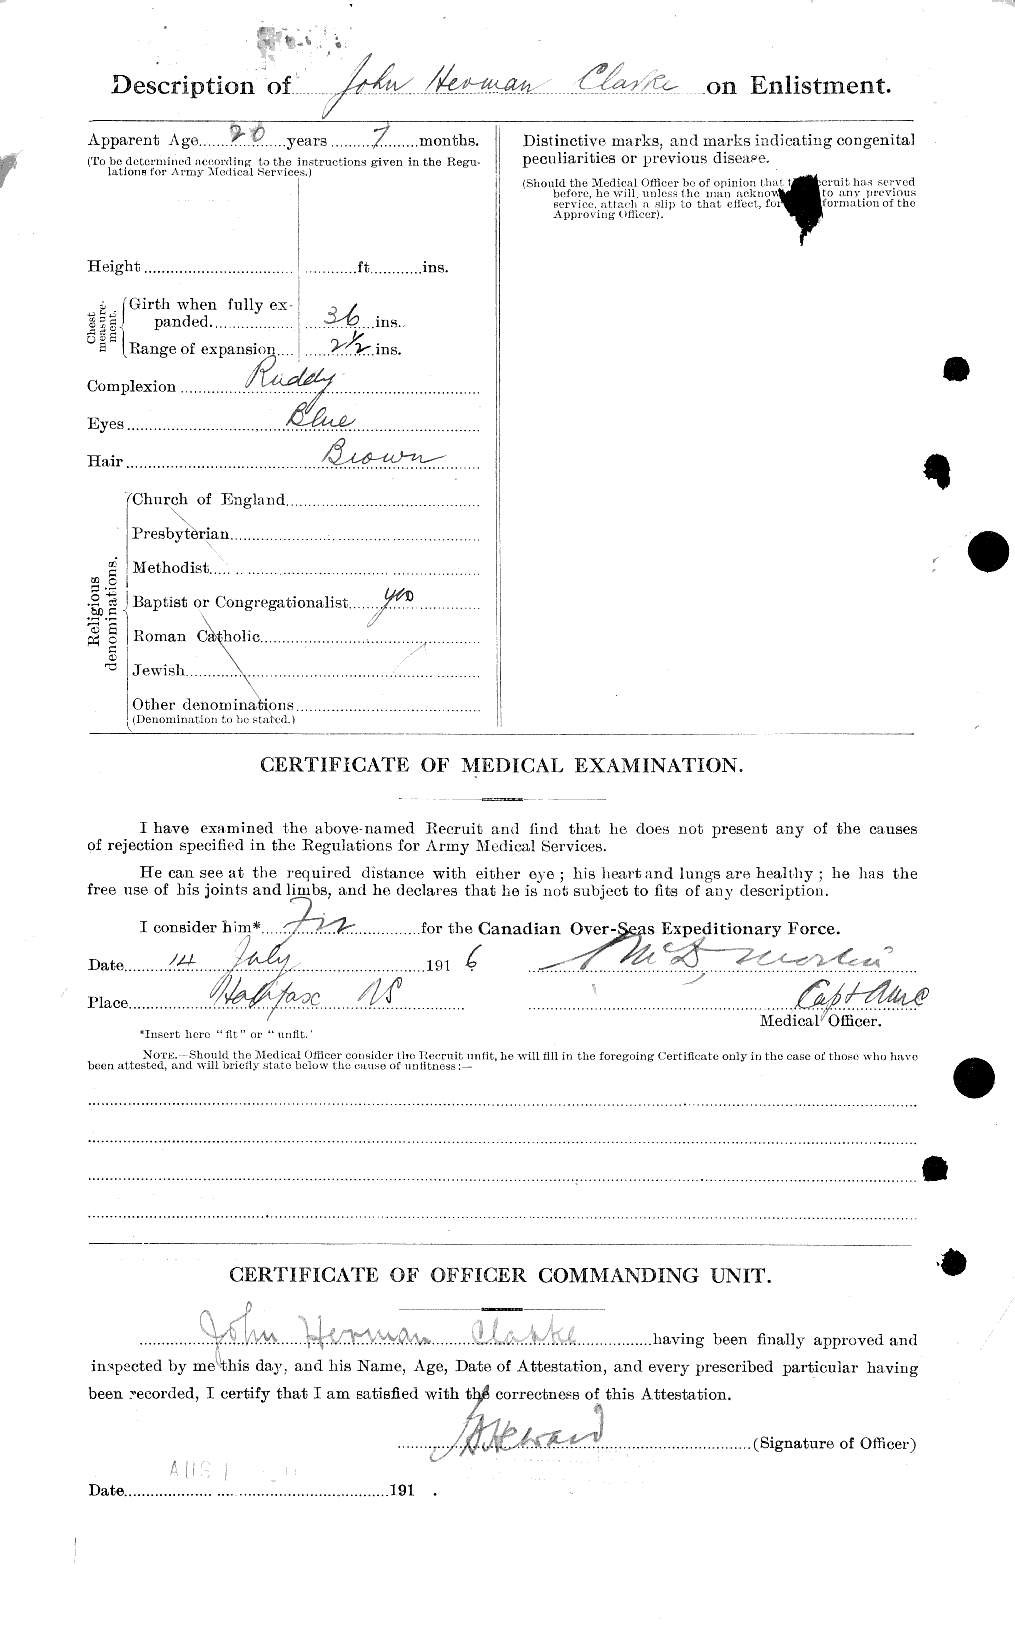 Dossiers du Personnel de la Première Guerre mondiale - CEC 024618b